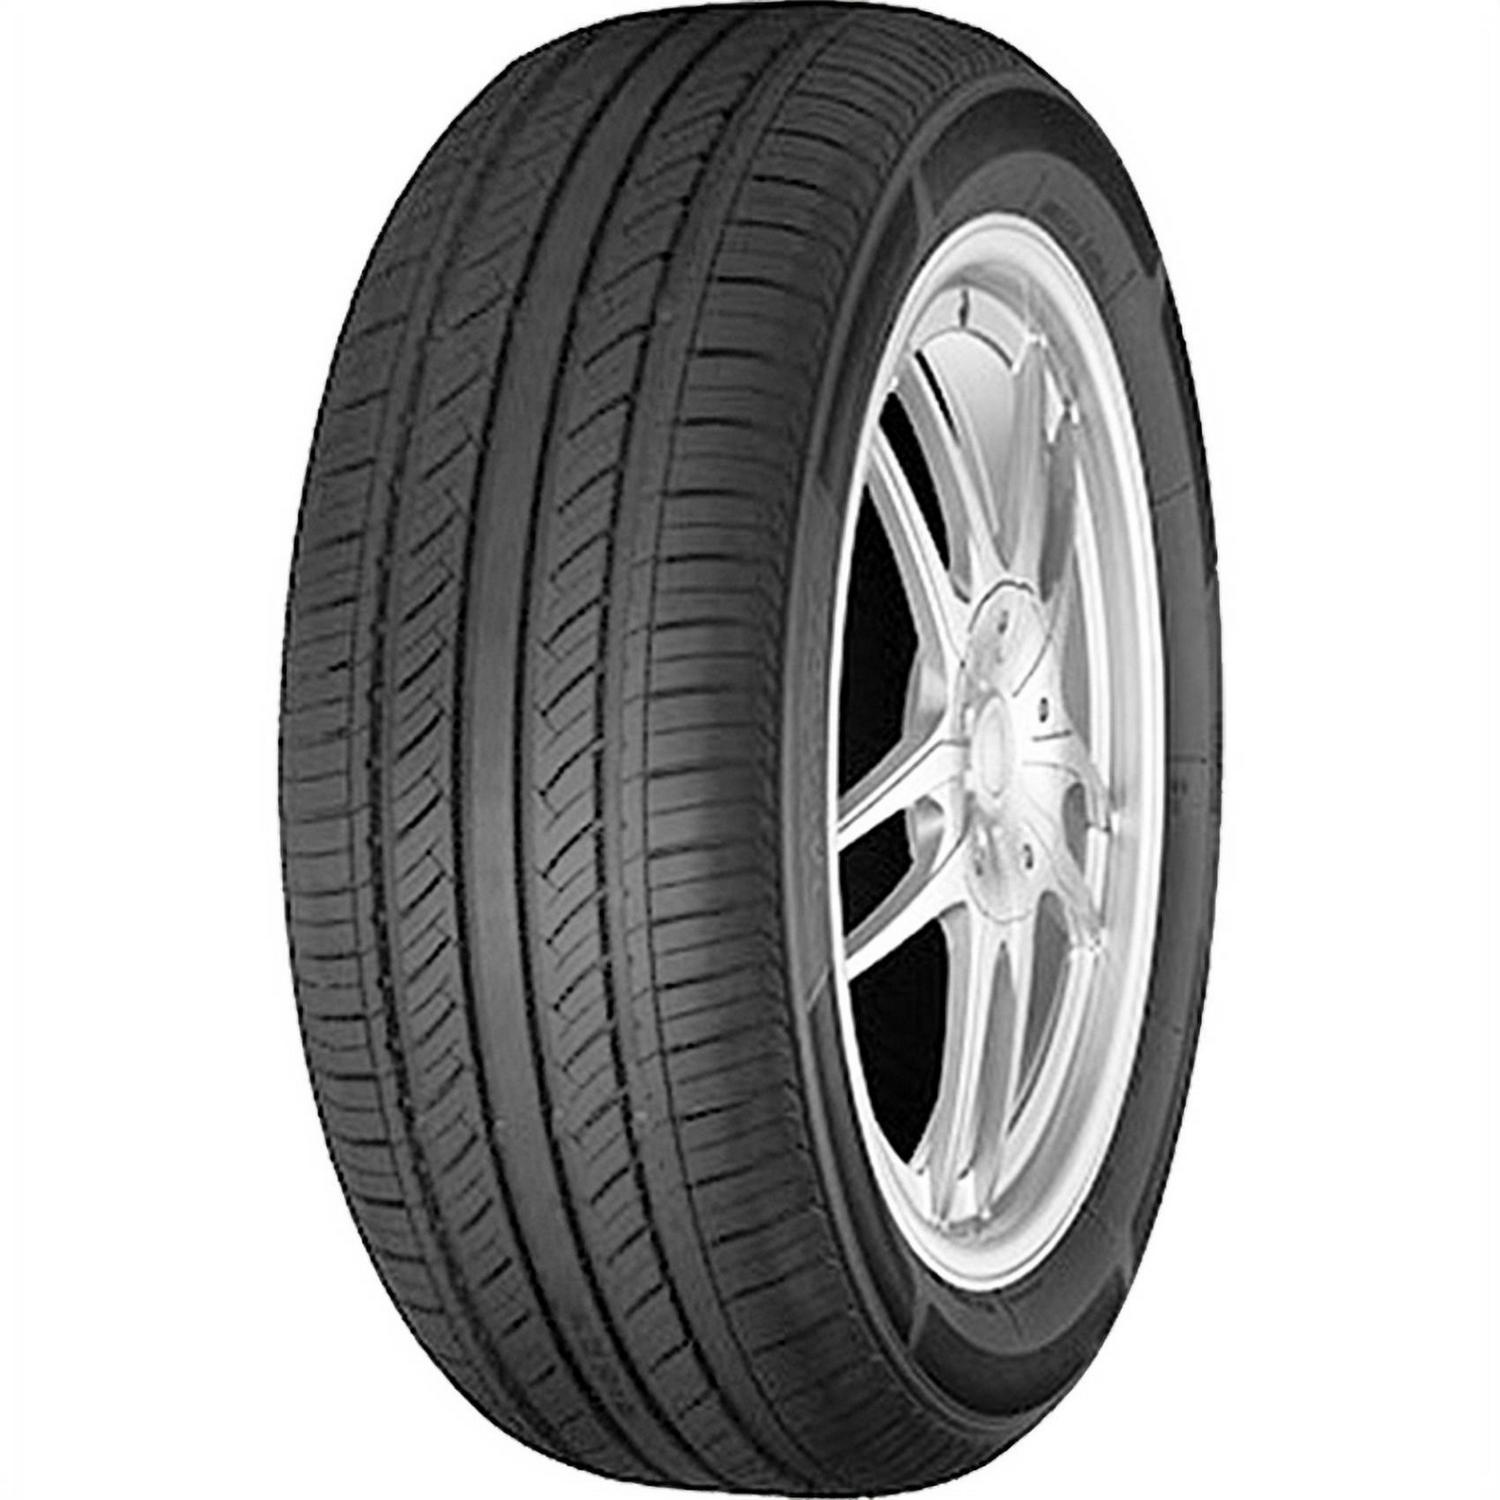 Advanta ER700 225/60R17 99T A/S All Season Tire